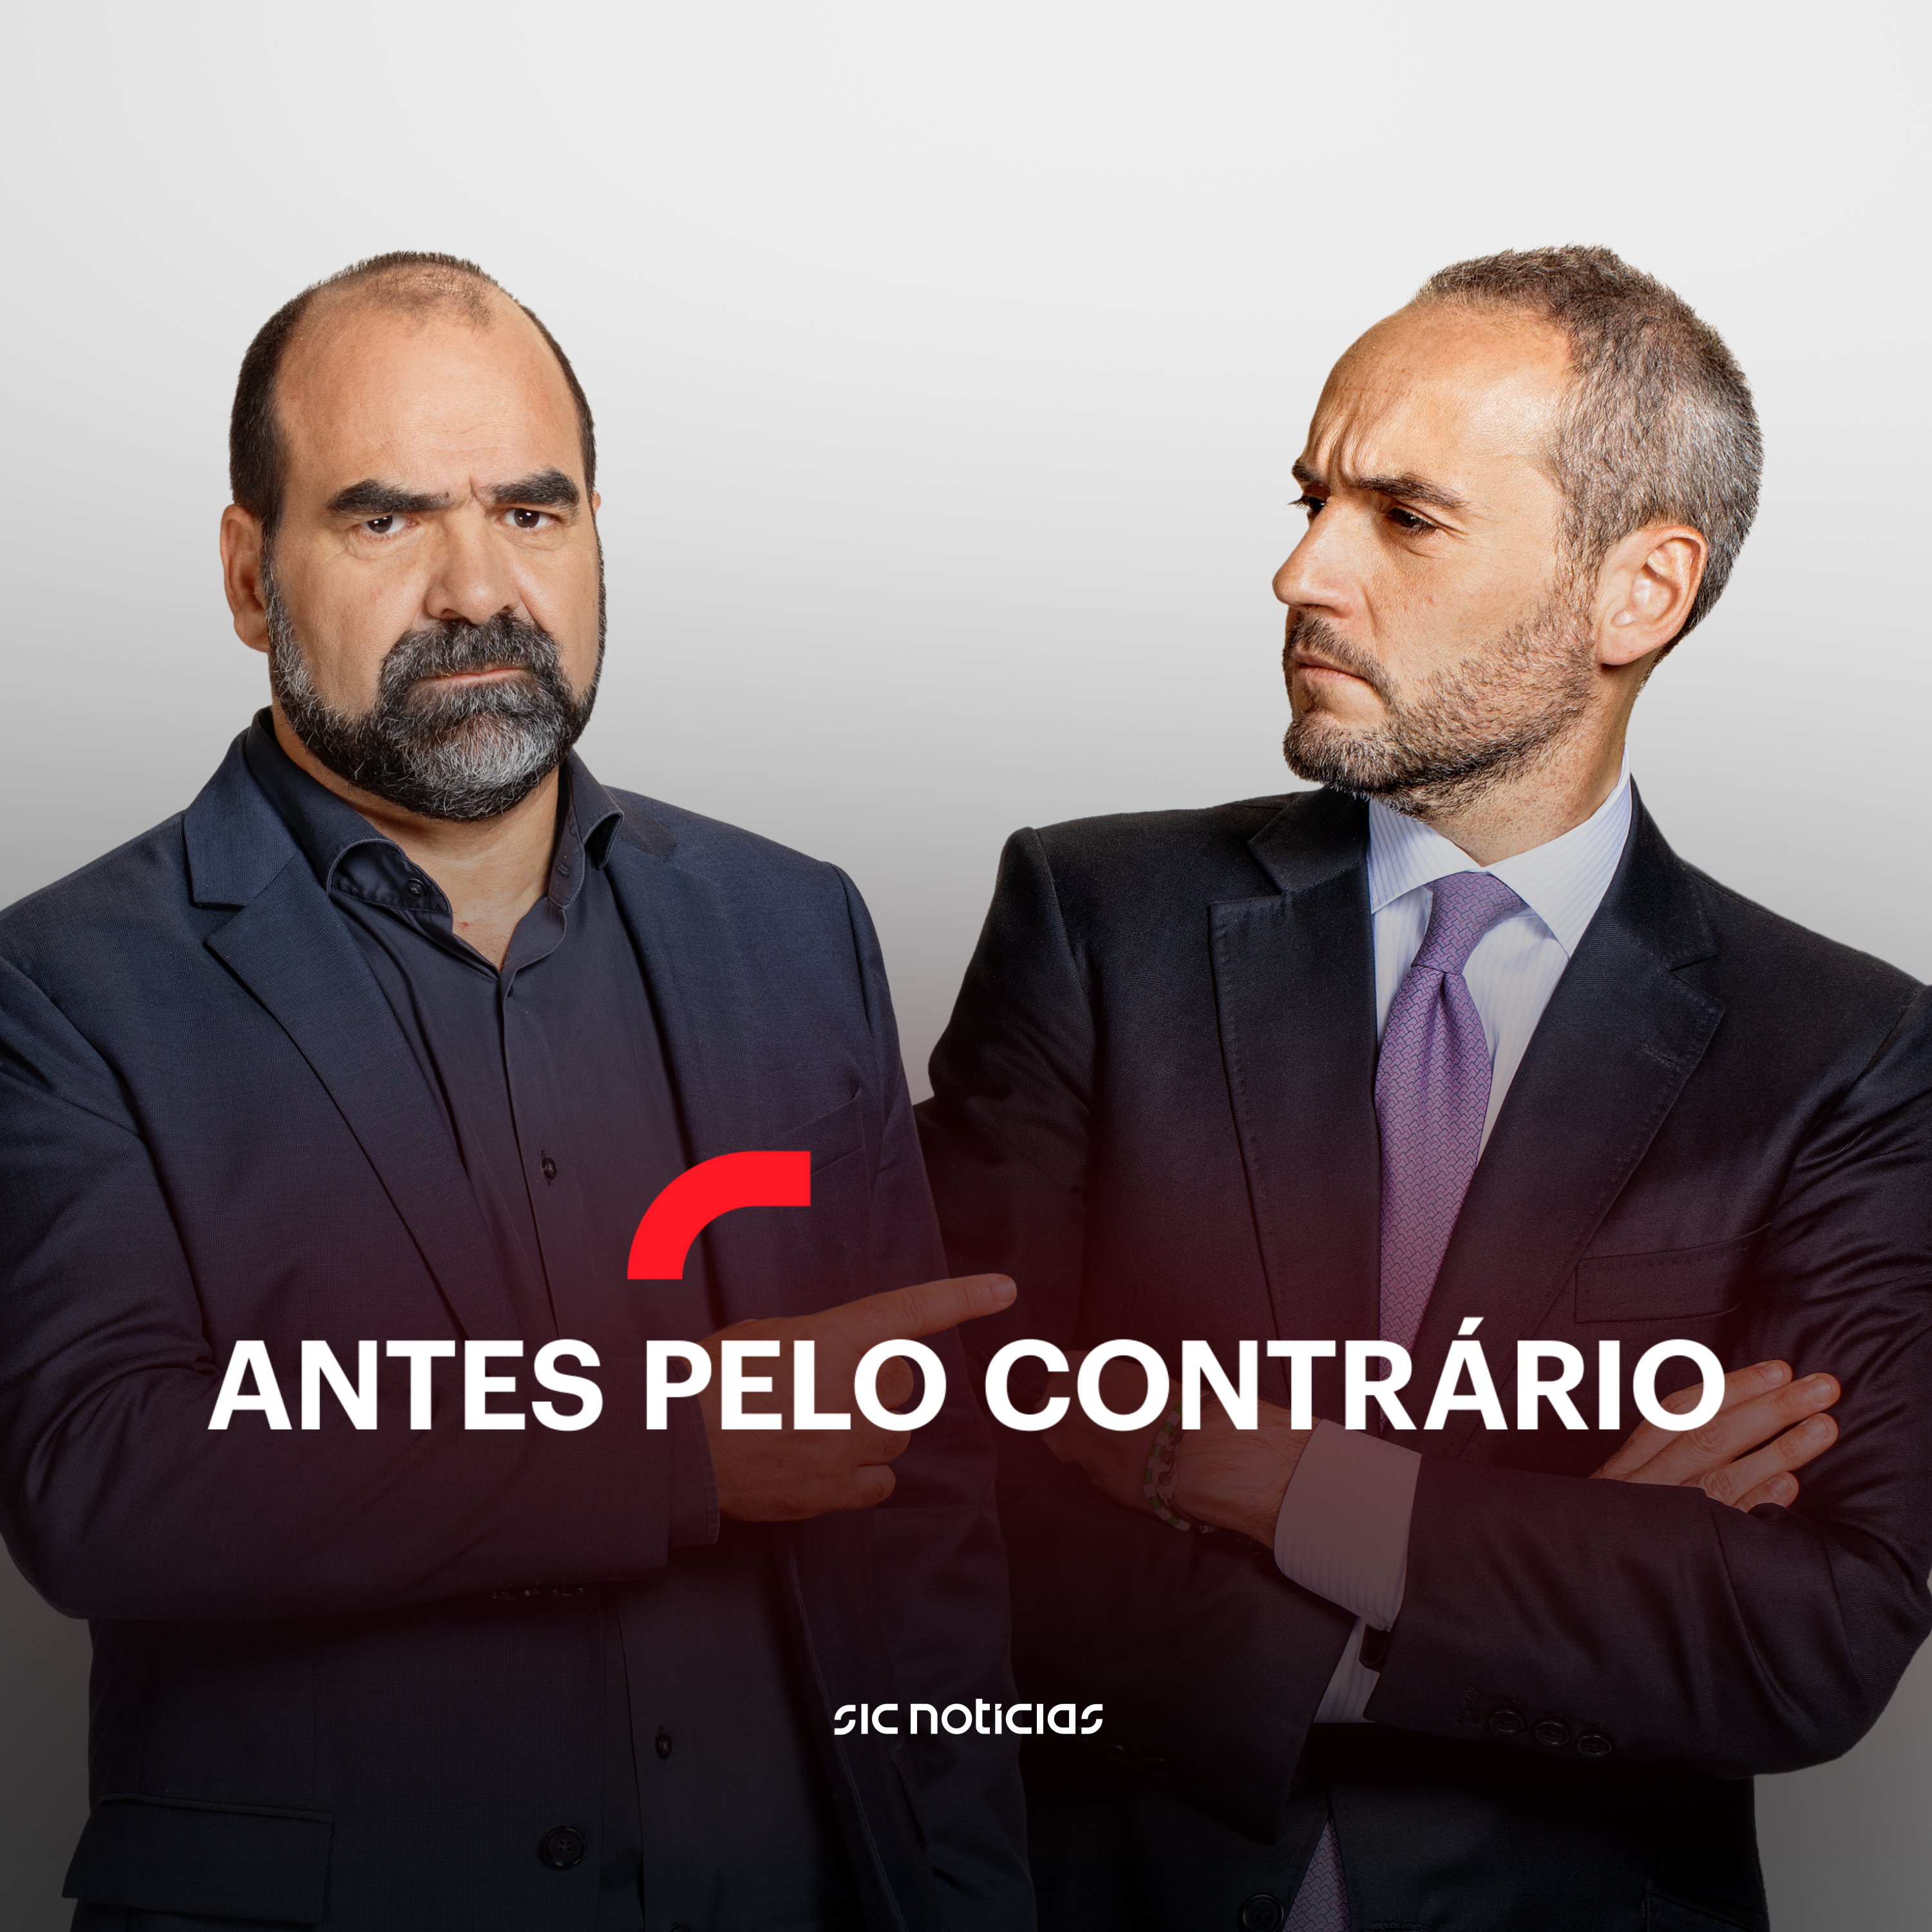 António Costa e Paulo Portas: serão os desbloqueadores dos milhares de indecisos?